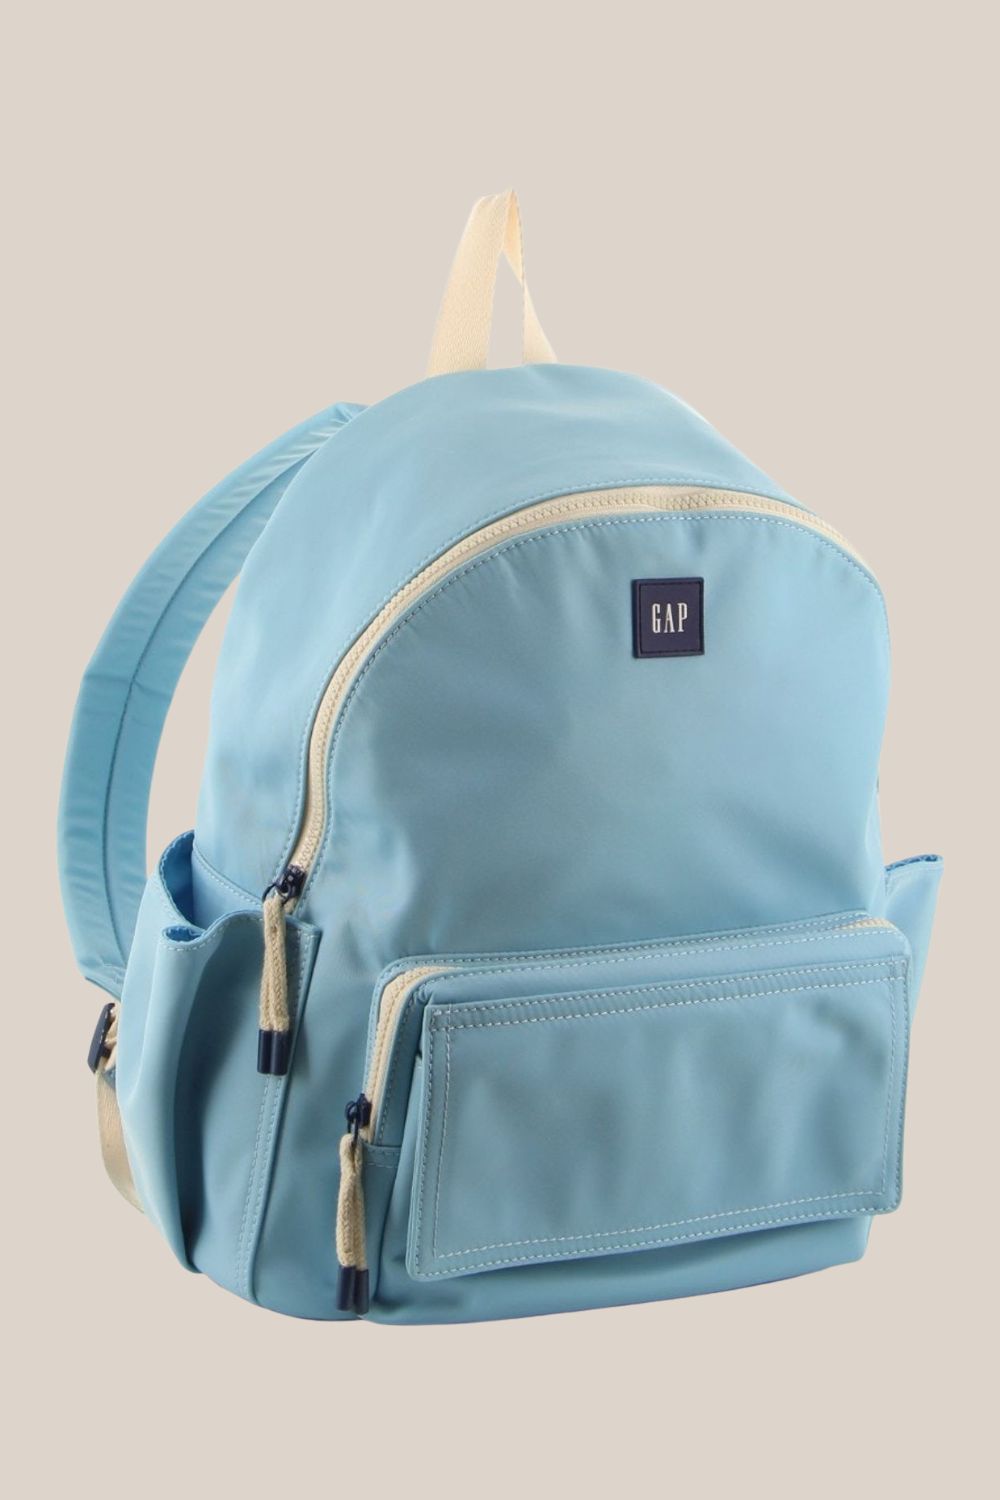 Gap Nylon Backpack